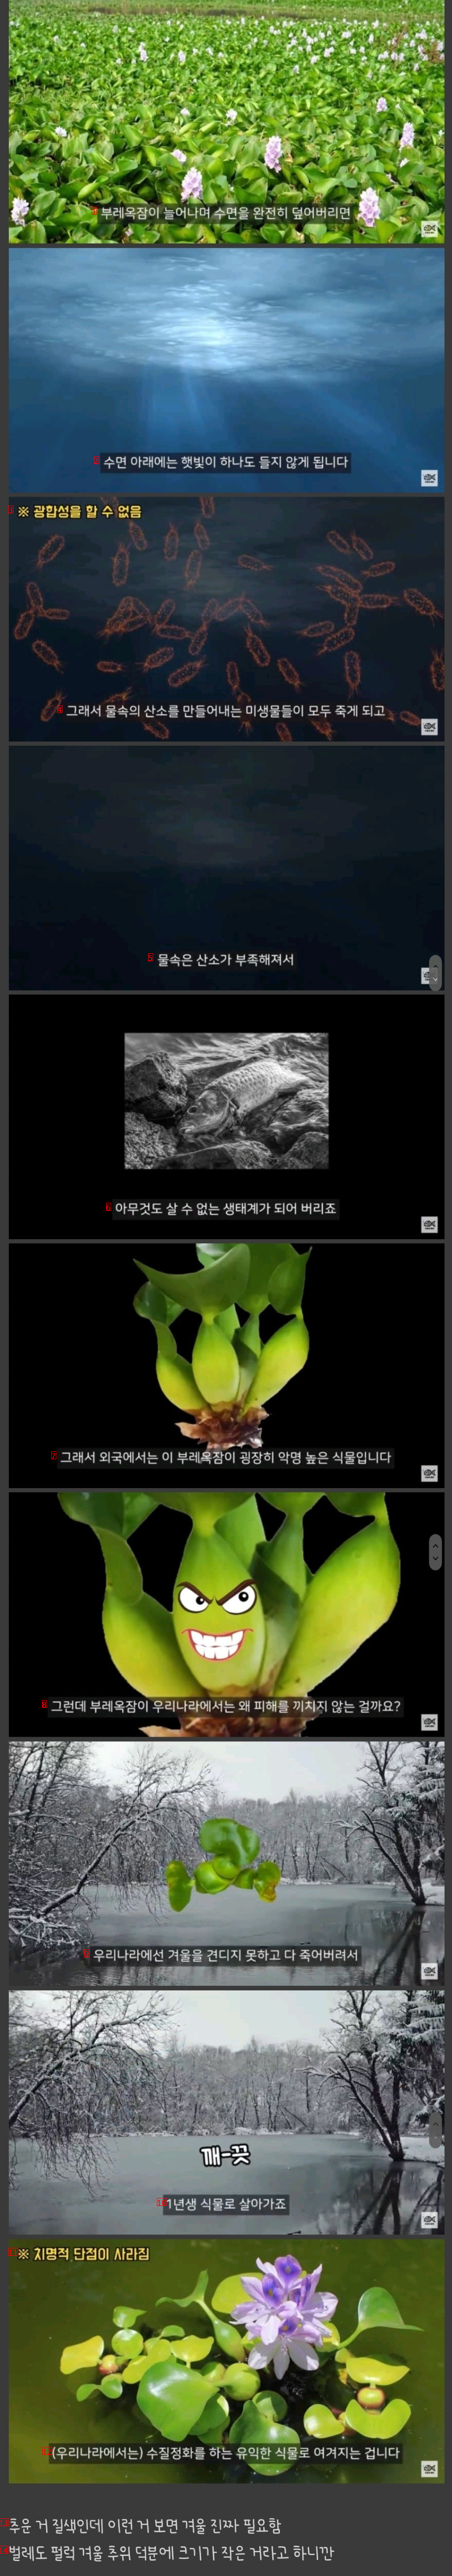 한국에선 인식이 좋은 잡초